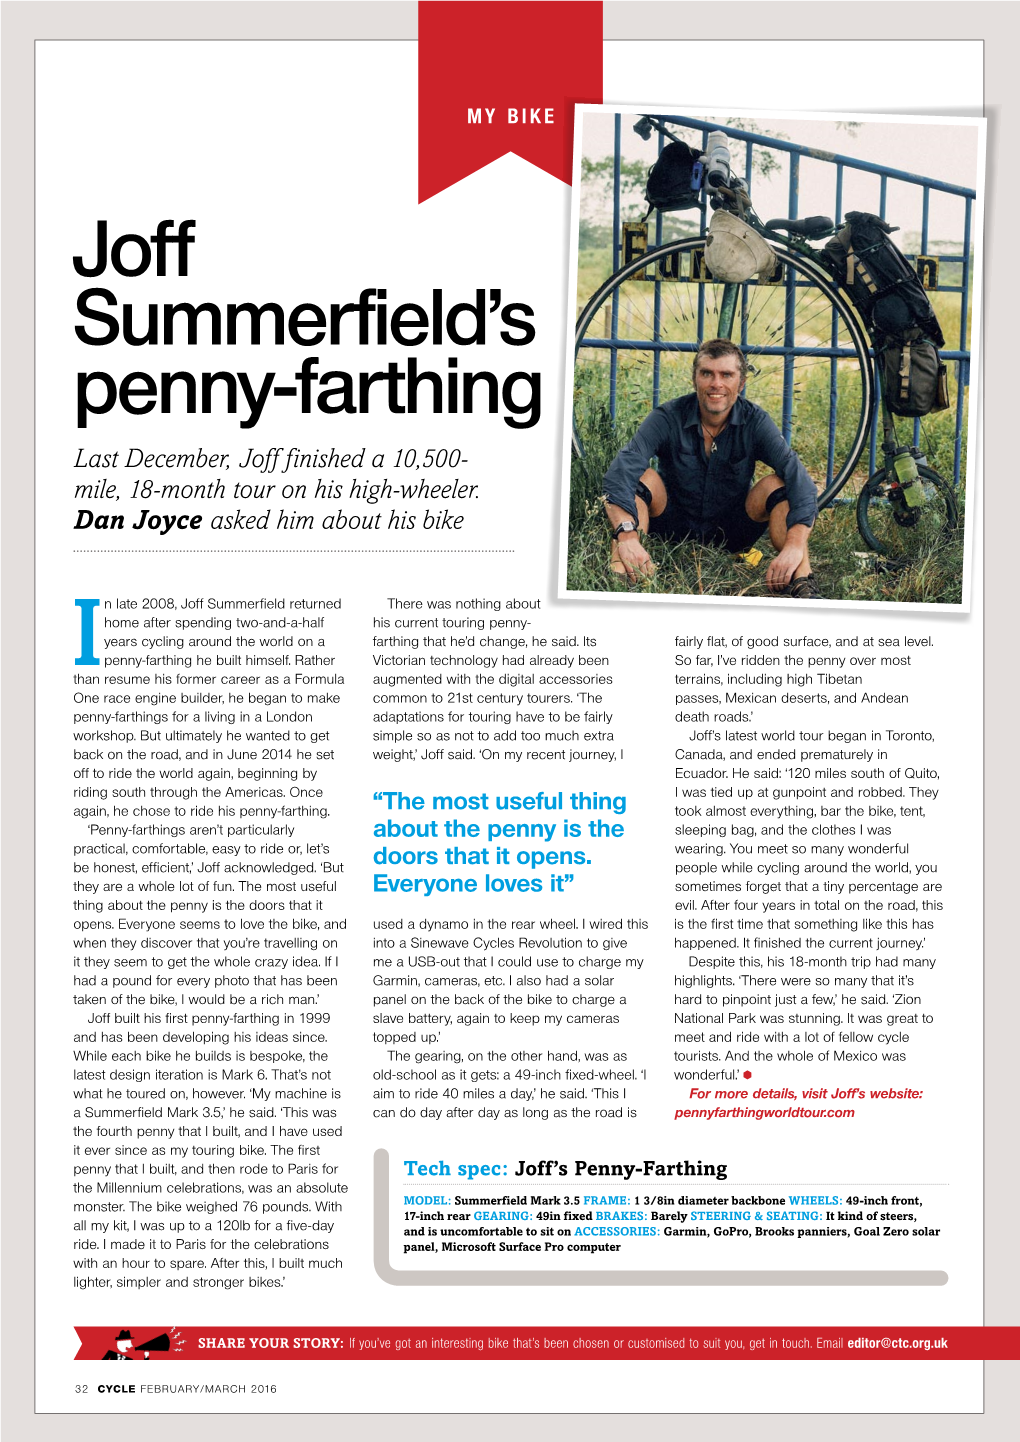 Joff Summerfield's Penny-Farthing